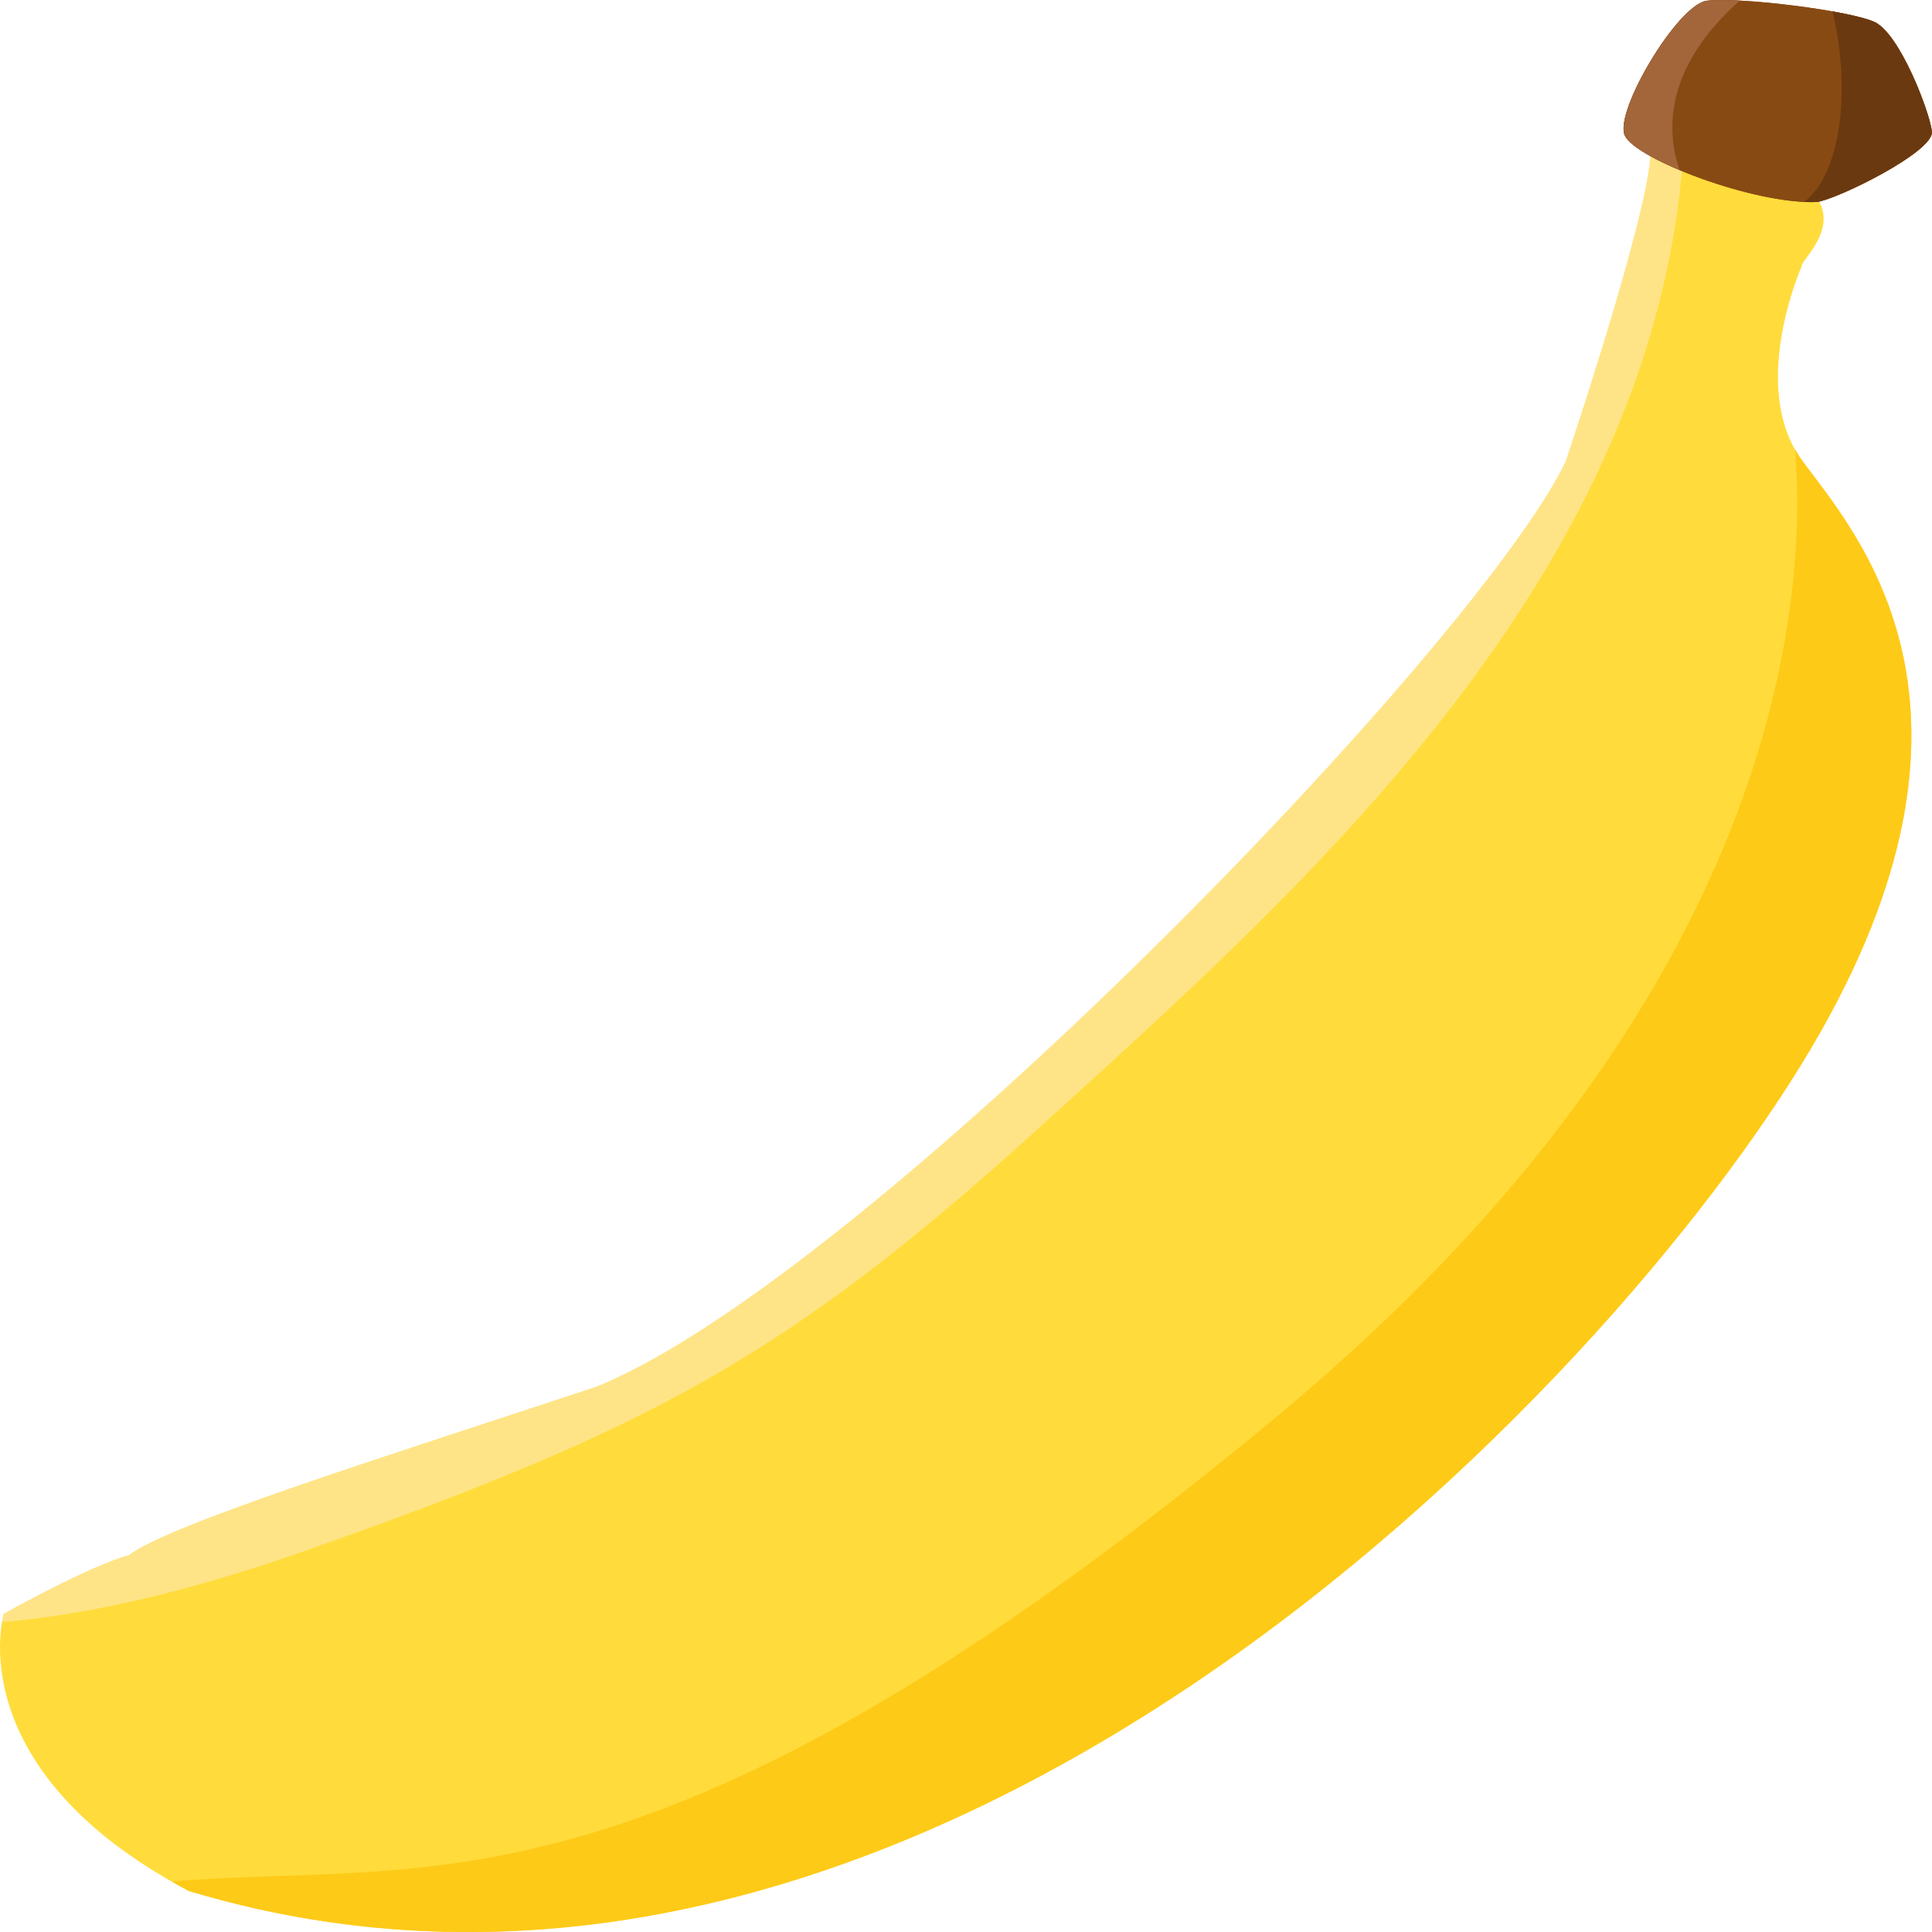 Bananas clipart simple. Banana big image png